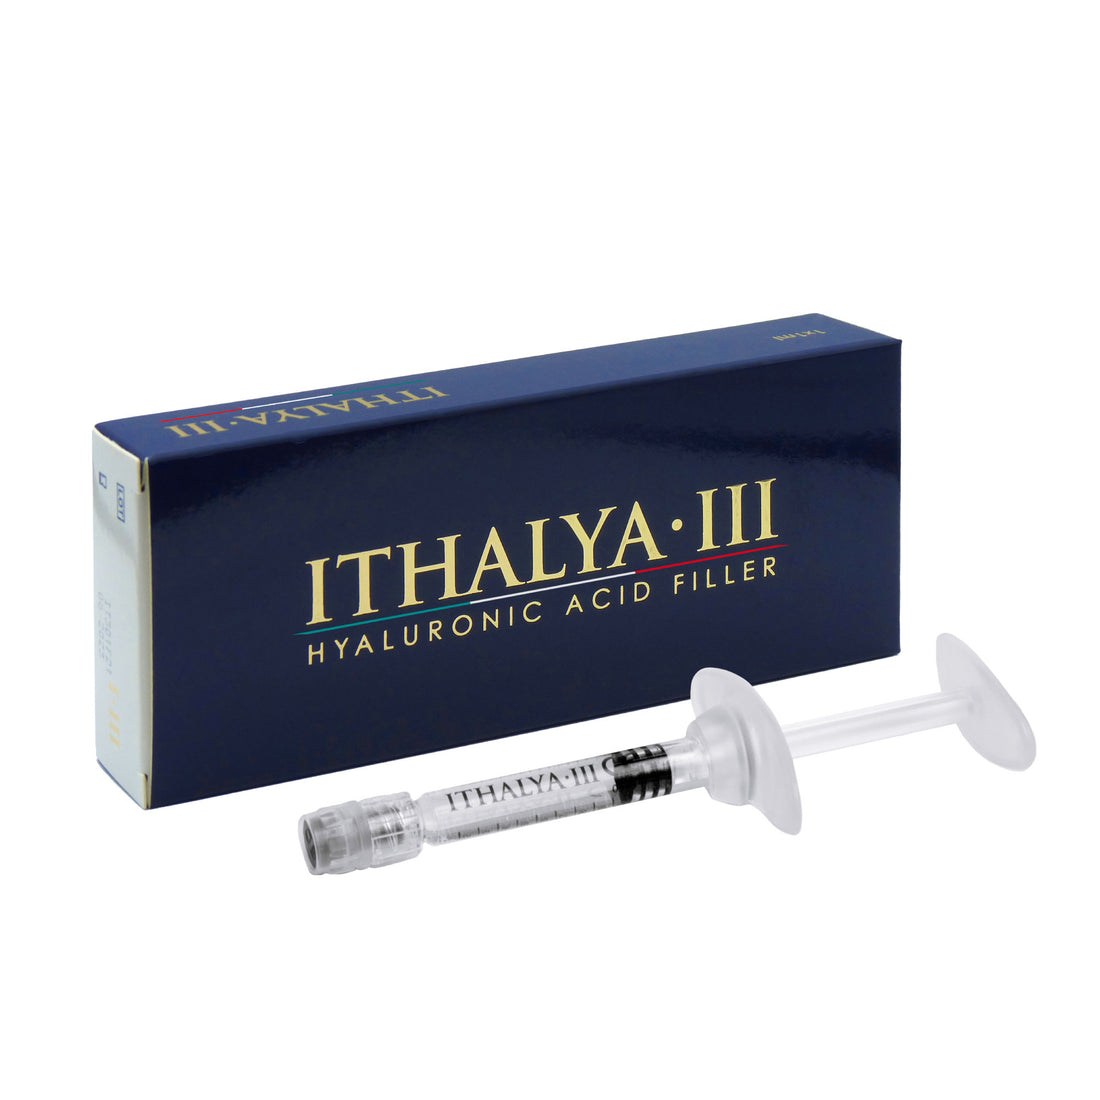 ITHALYA III - Cross-linked Hyaluronic Acid Filler - MONOPHASIC CROSSLINKED